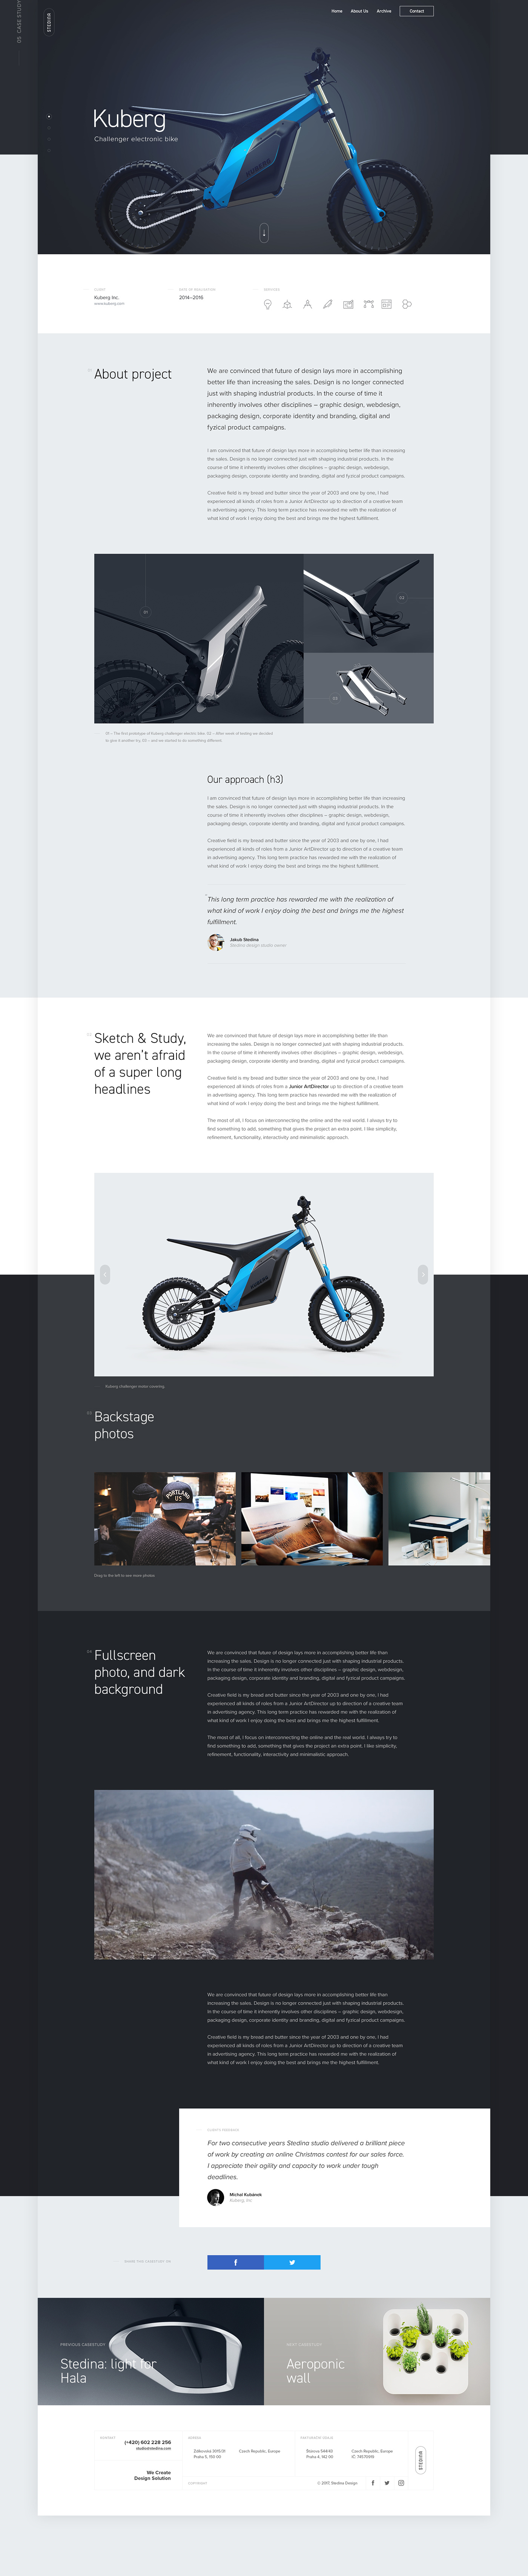 Web portfolio studio product design  industrial design  ux Case Study brand digital